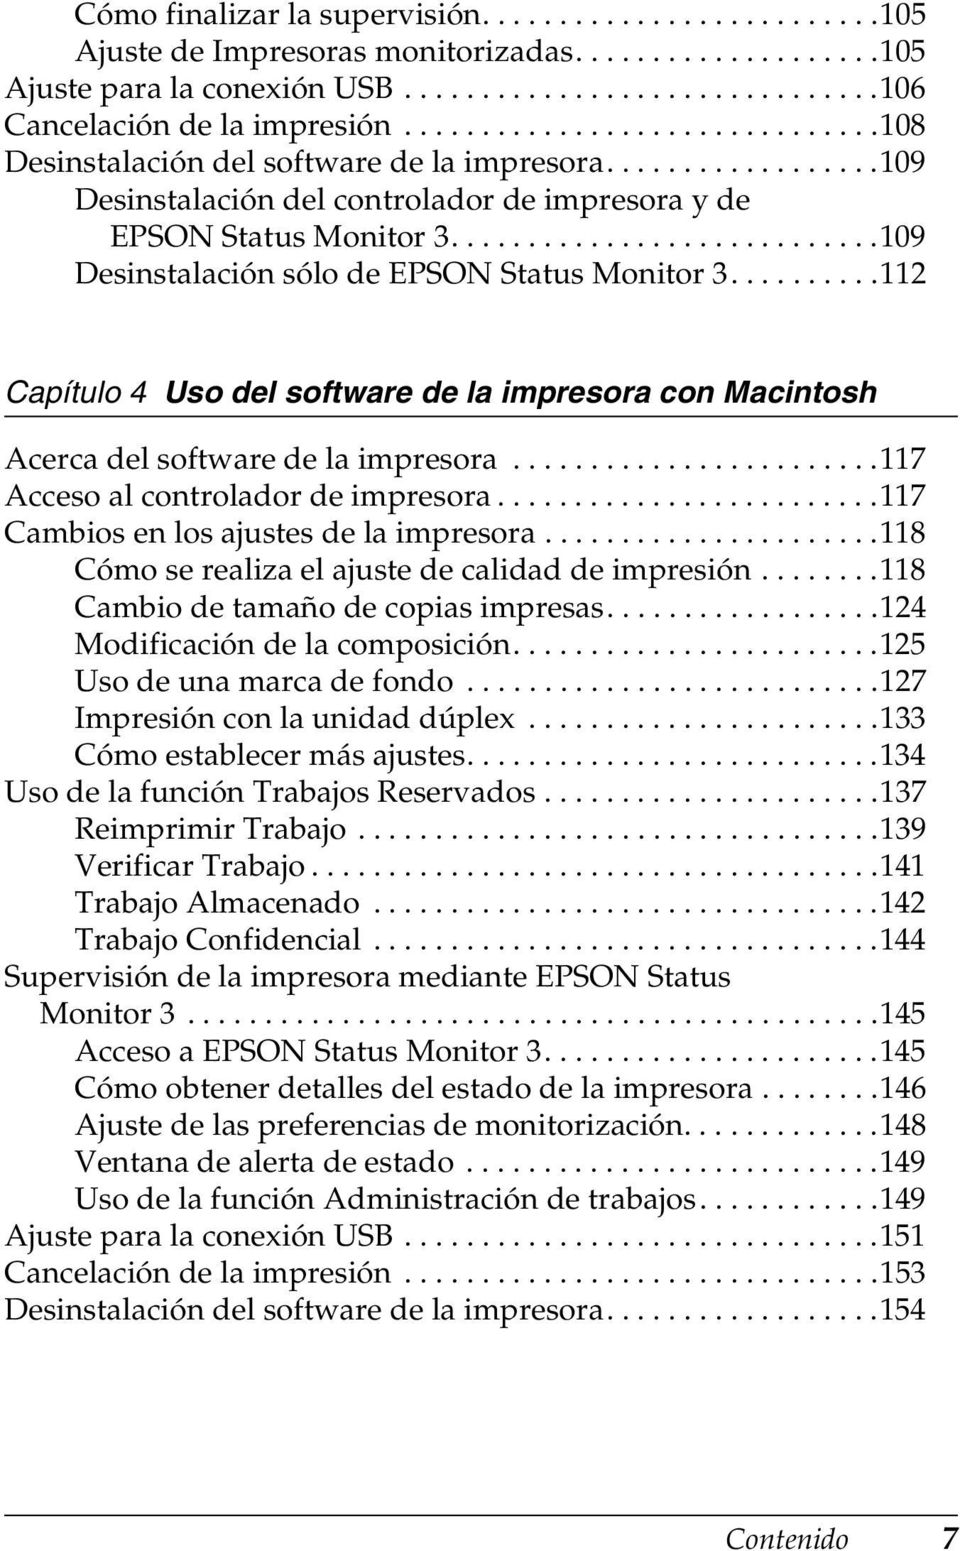 ...........................9 Desinstalación sólo de EPSON Status Monitor..........112 Capítulo Uso del software de la impresora con Macintosh Acerca del software de la impresora.